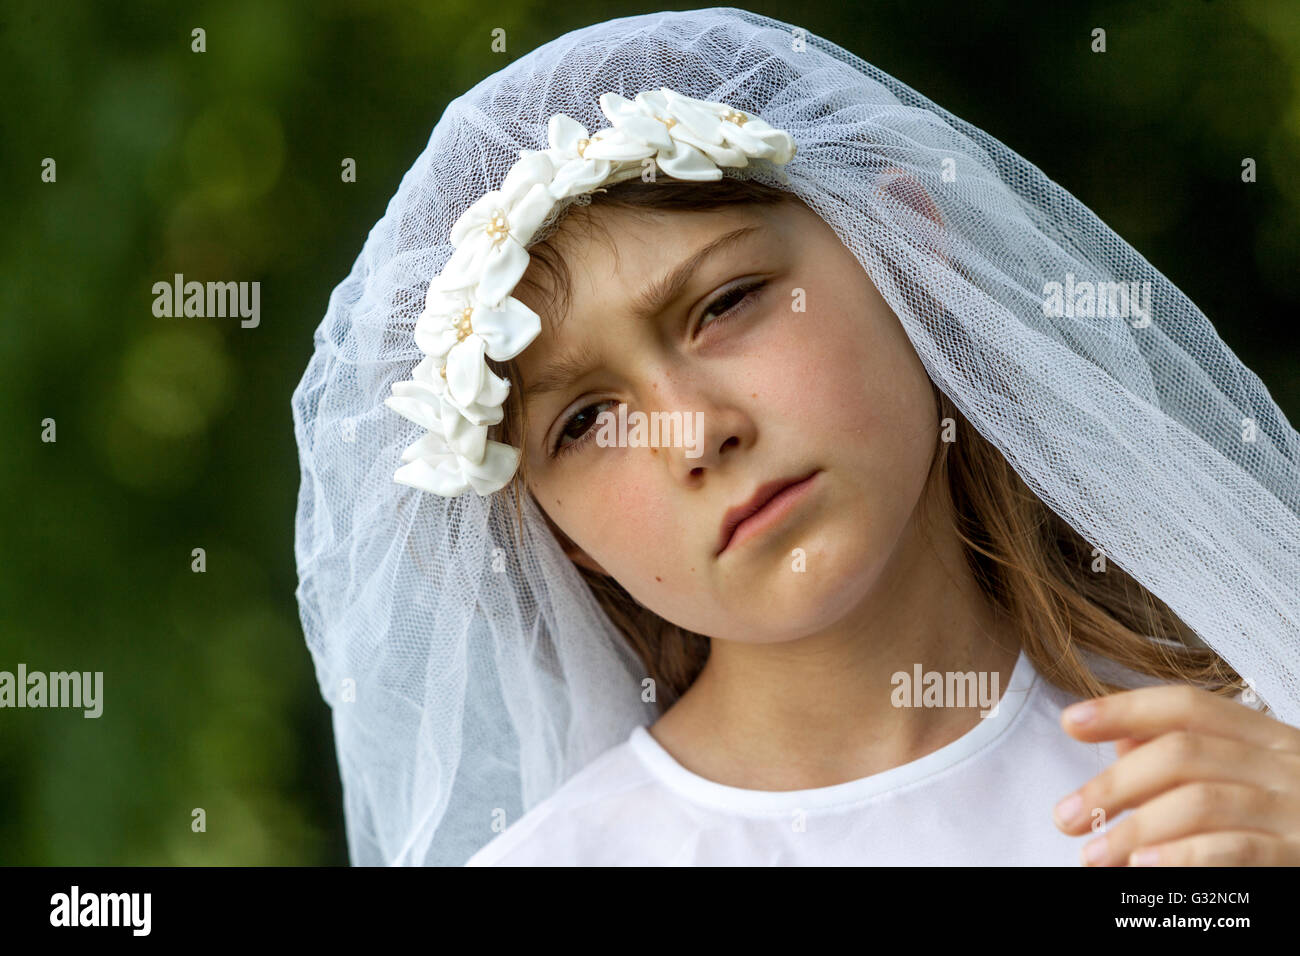 L'età dell'innocenza, 6- 7-anno-vecchia ragazza in abito bianco, giochi ragazze sposa Foto Stock